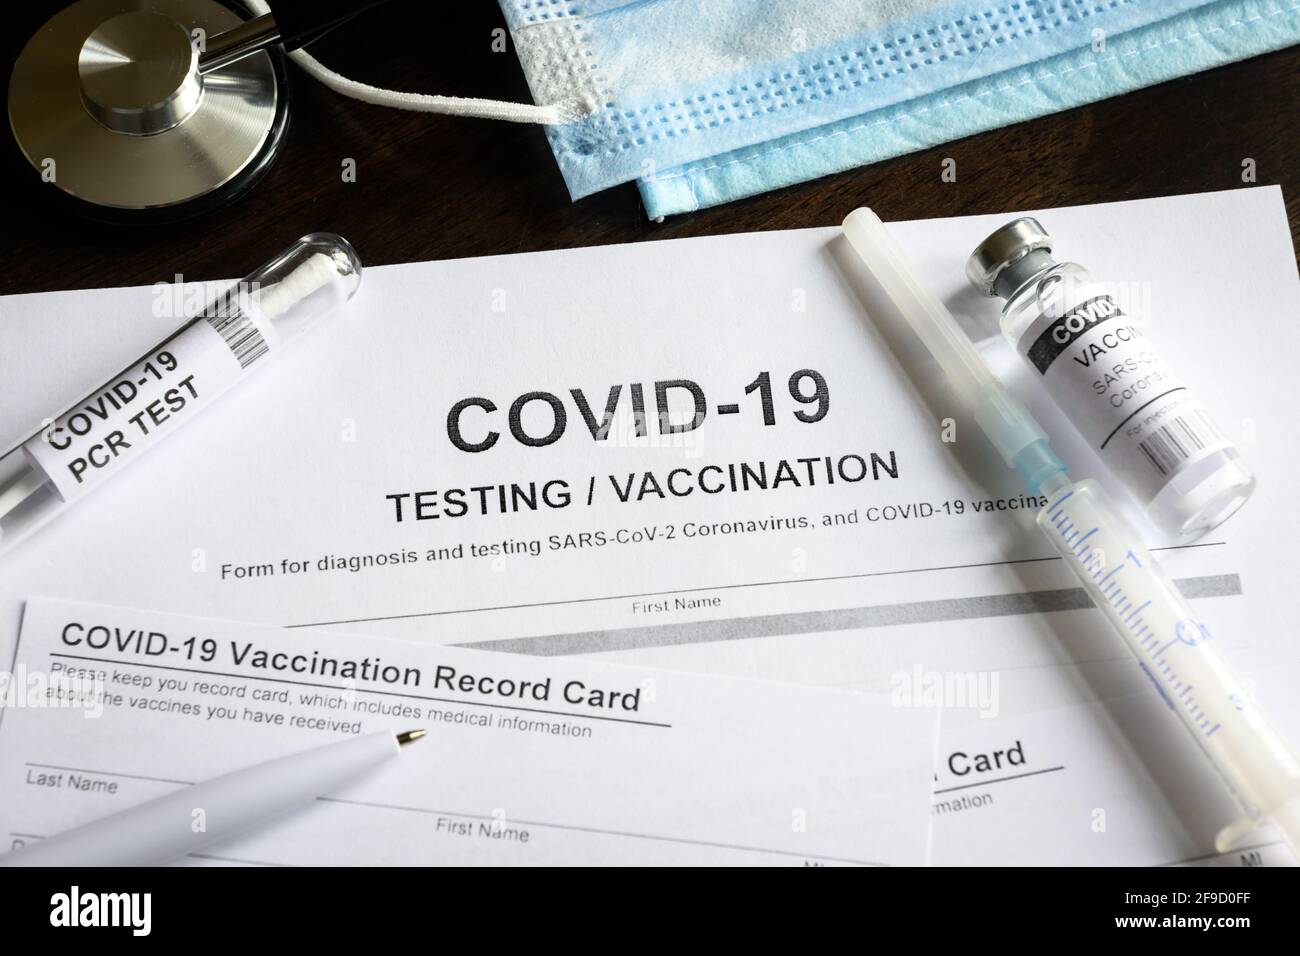 COVID-19-ärztliche Untersuchung und Impfung am Schreibtisch, Injektionspaket für Coronavirus-Impfstoff und Impfpass am Schreibtisch. Konzept des Corona-Virus Stockfoto